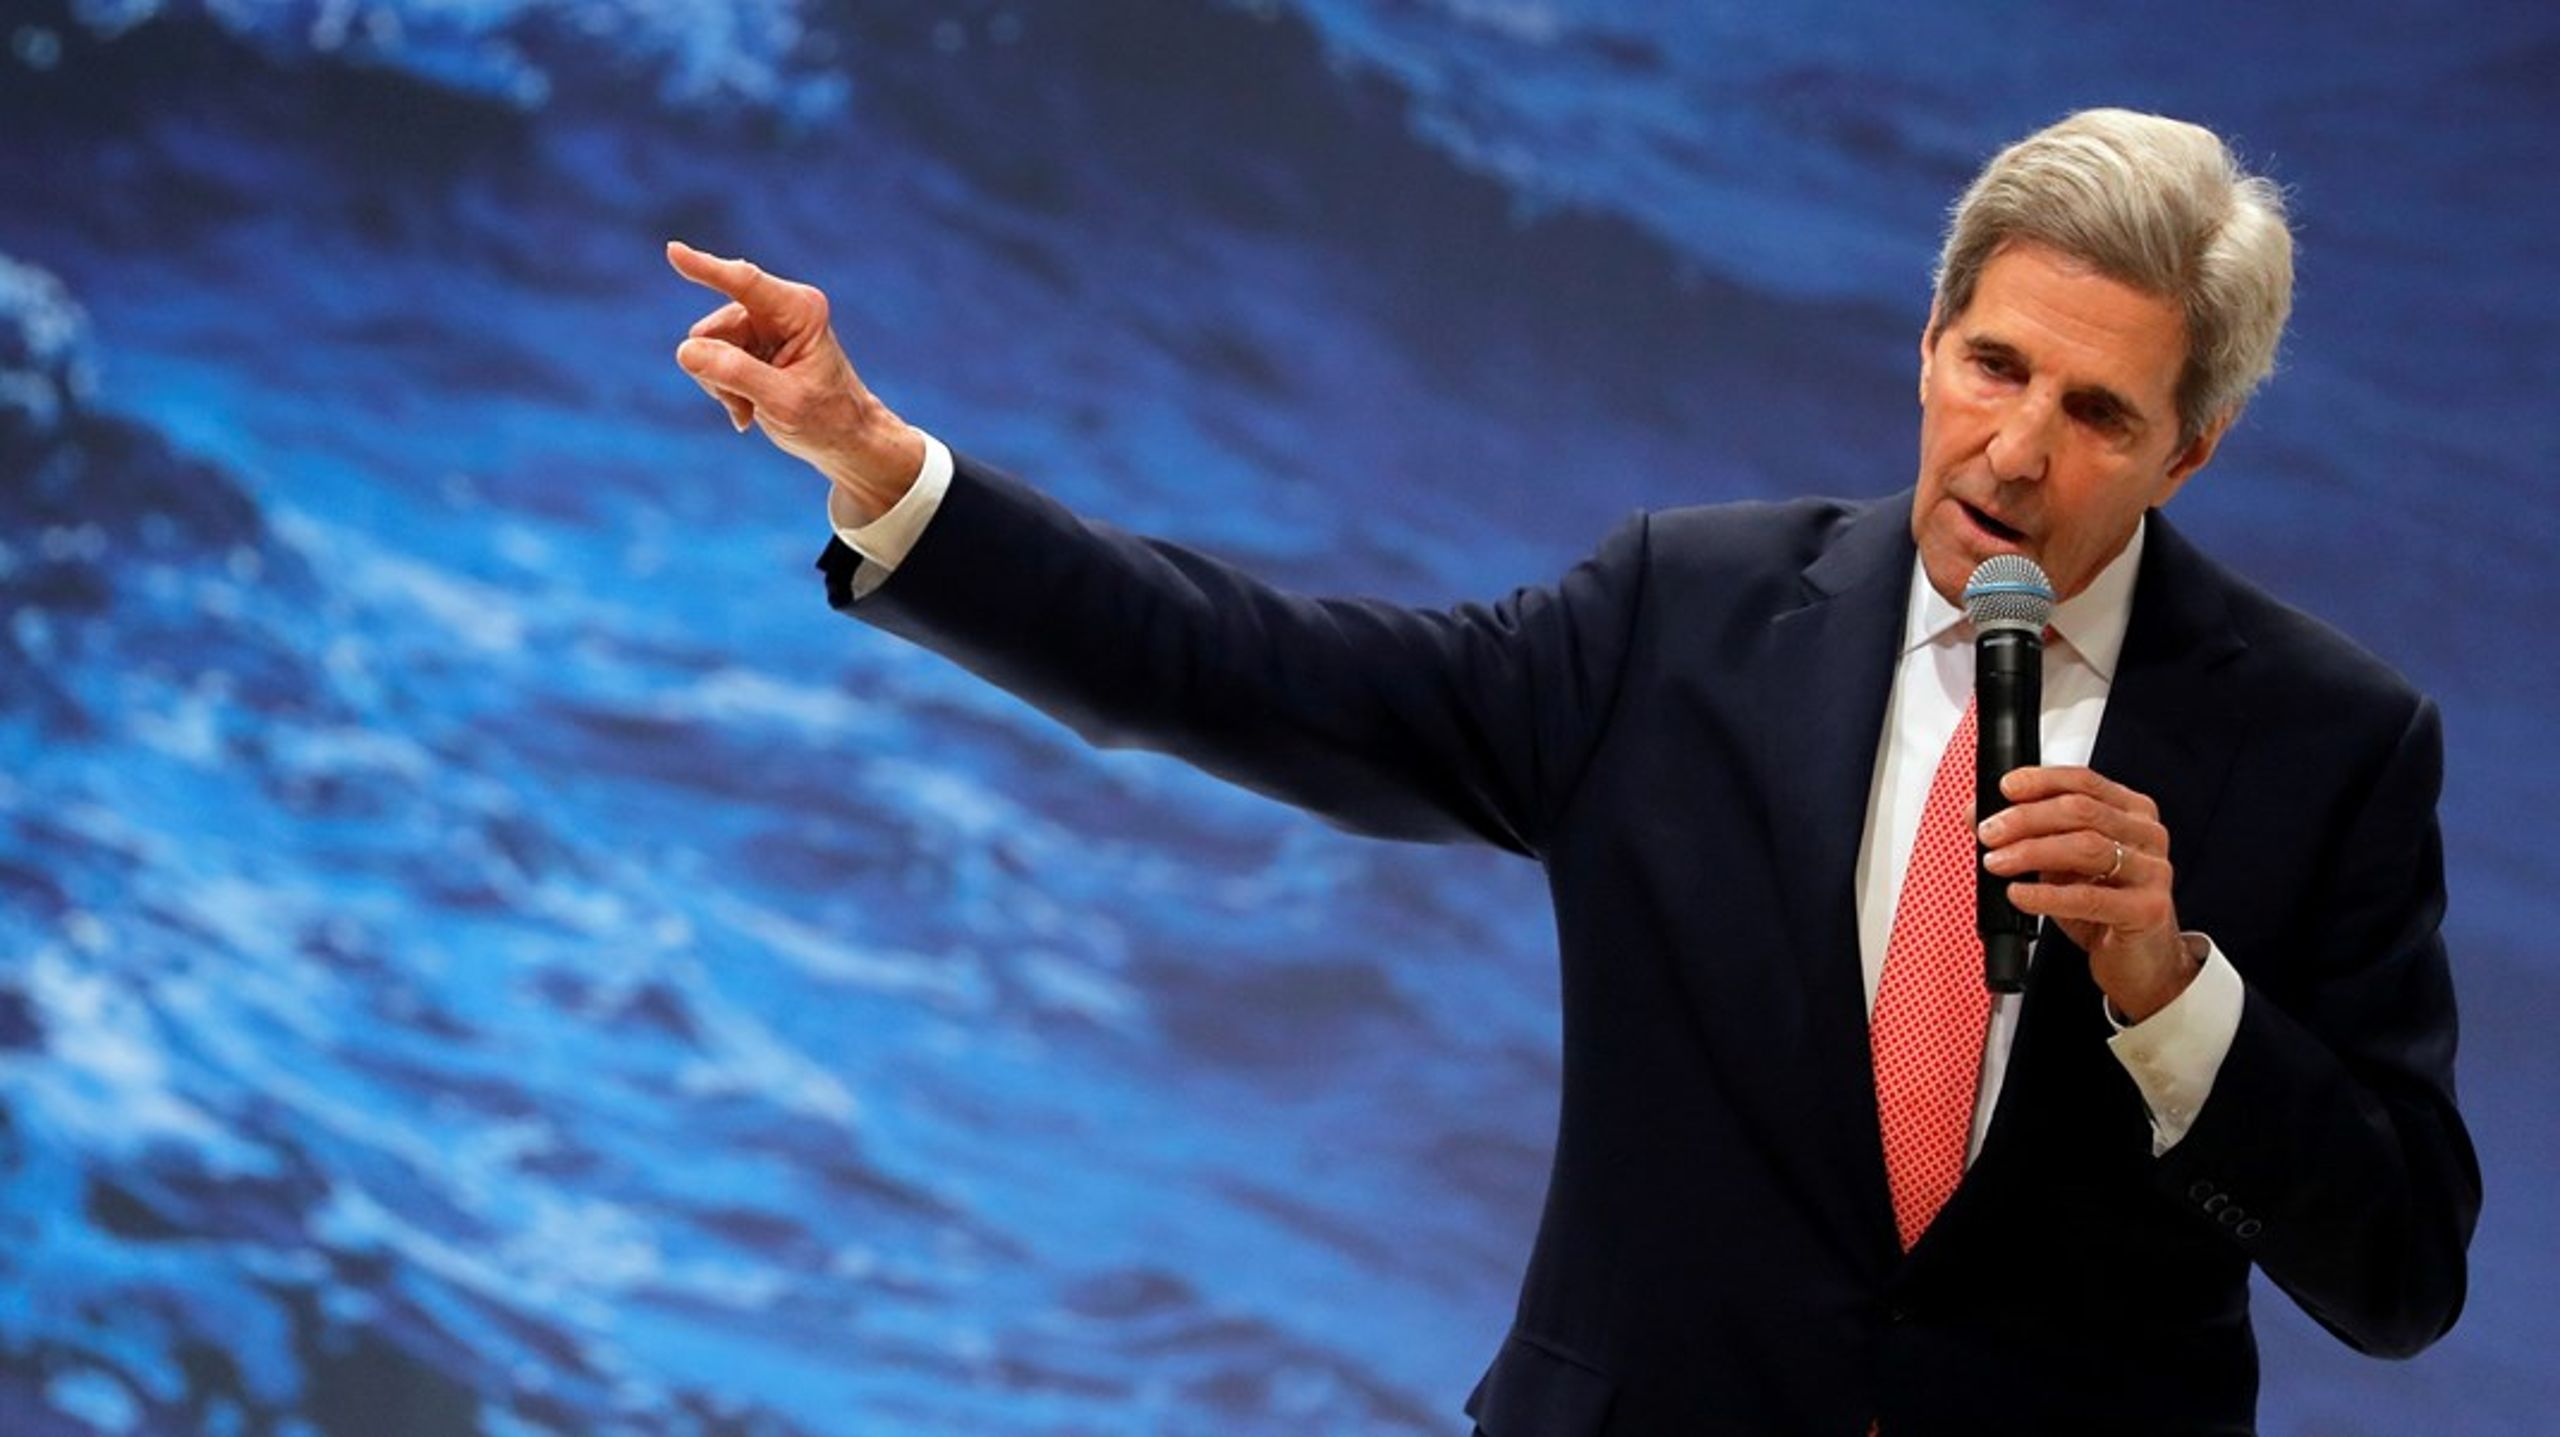 USA's klimatalsperson, John Kerry, holdt tale på klimatopmødet, hvor deltagerne præsenterede løsninger, som skal hjælpe fattige med hurtig tilpasning,&nbsp;skriver Mattias Söderberg.